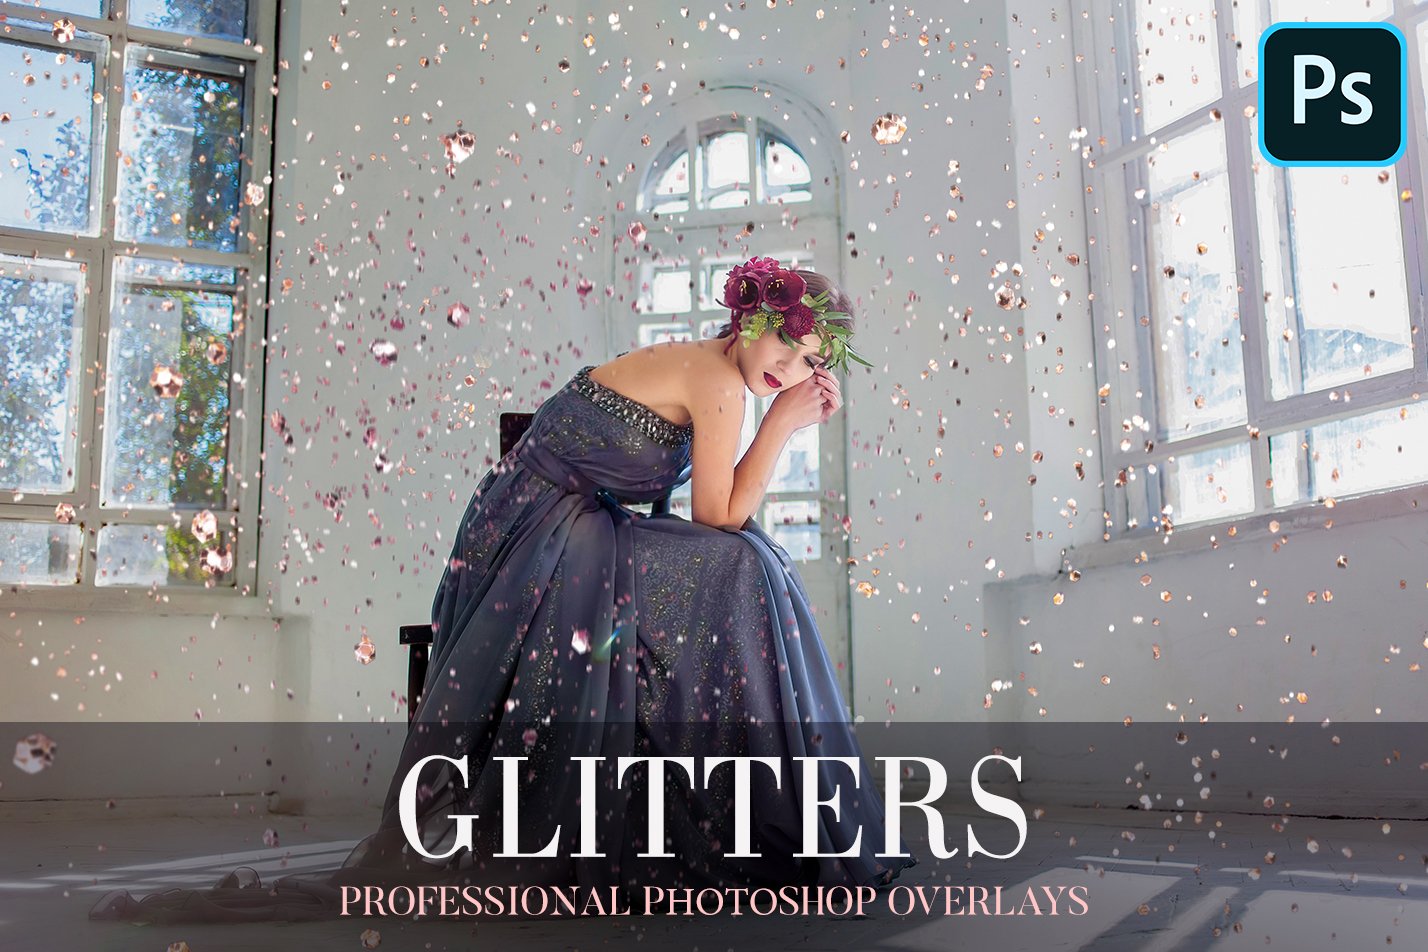 Glitters Overlays Photoshopcover image.